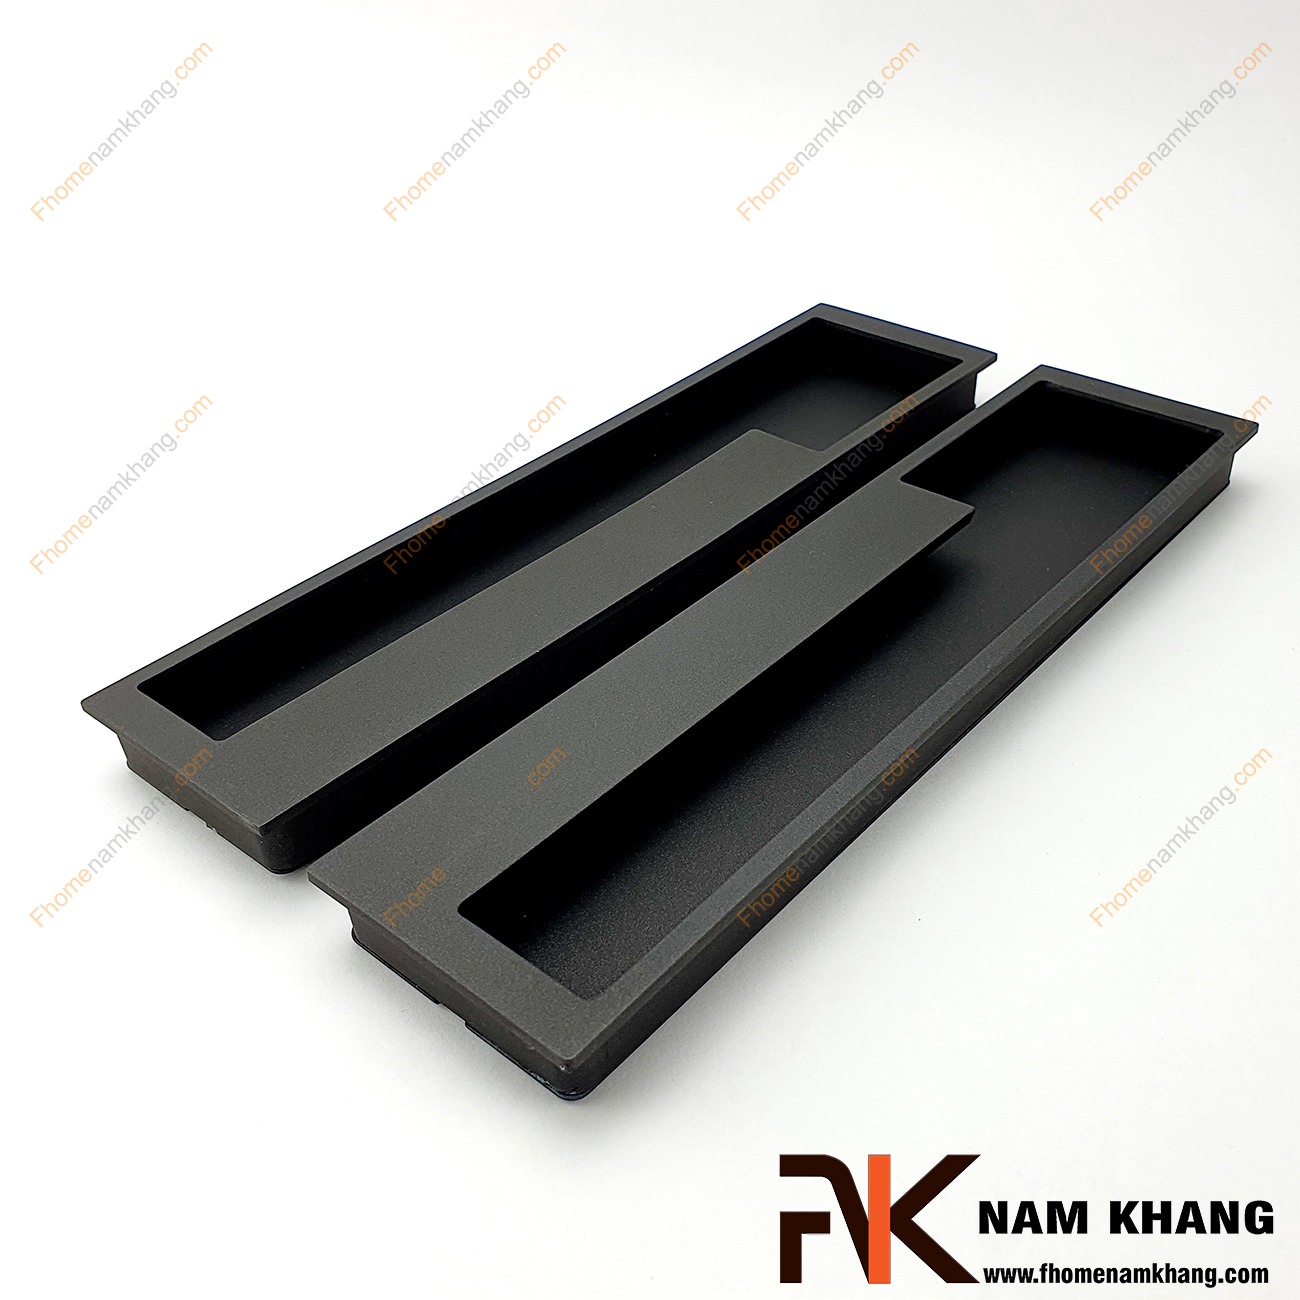 Tay nắm âm tủ màu đen NK438-192D là loại tay nắm chuyên dùng cho các loại tủ đặt ở những nơi có không gian hạn chế hoặc dùng để nâng cao tính thẫm mỹ của sản phẩm